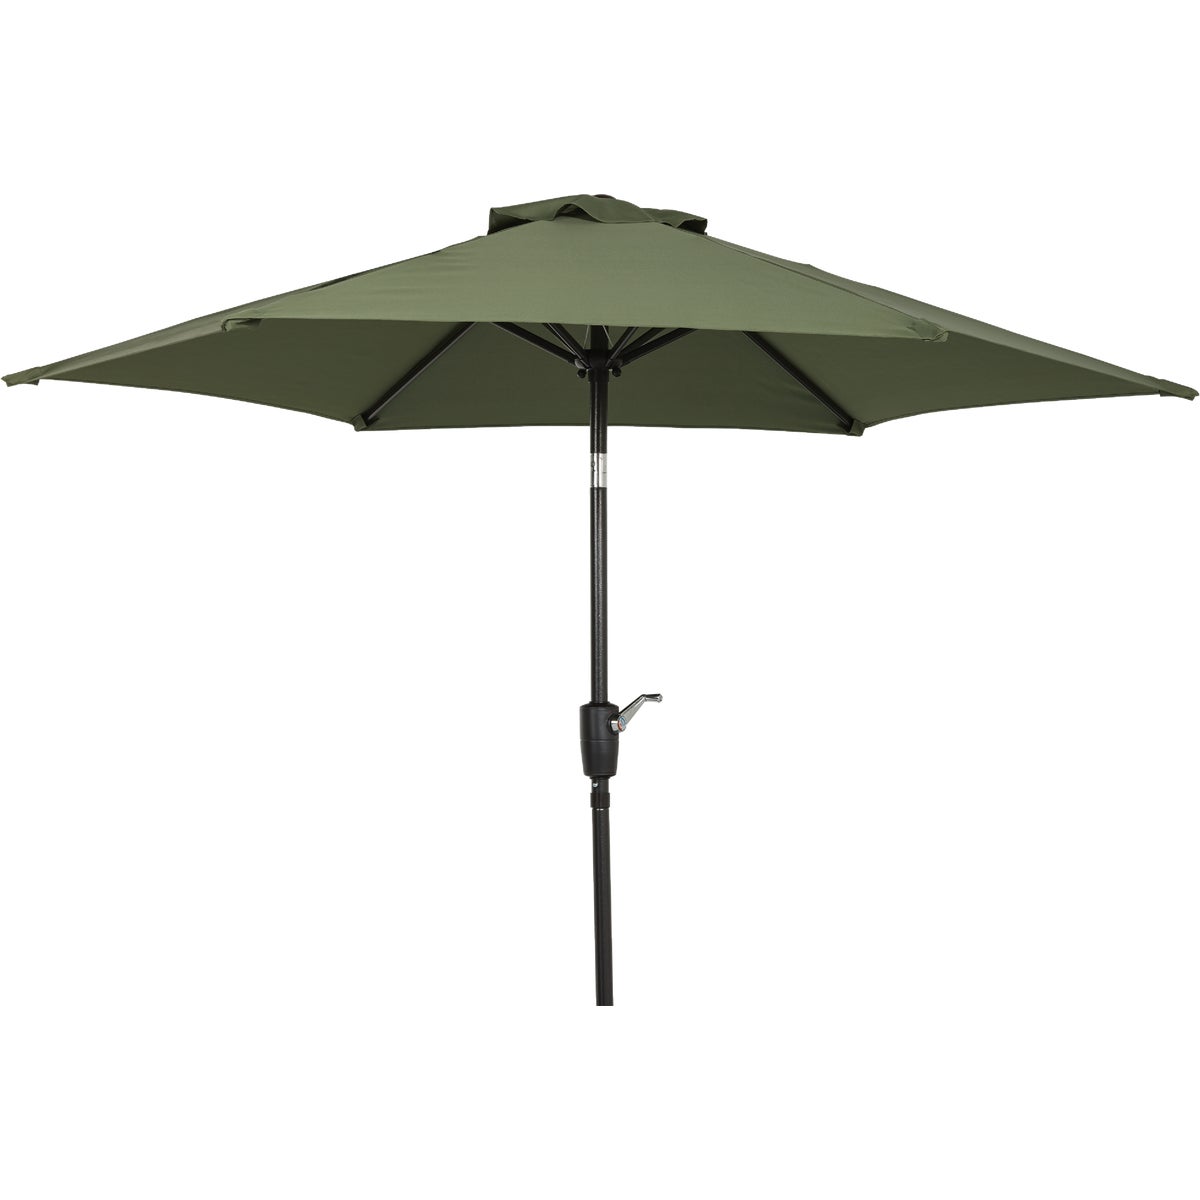 Outdoor Expressions 7.5 Ft. Aluminum Tilt/Crank Heather Green Patio Umbrella